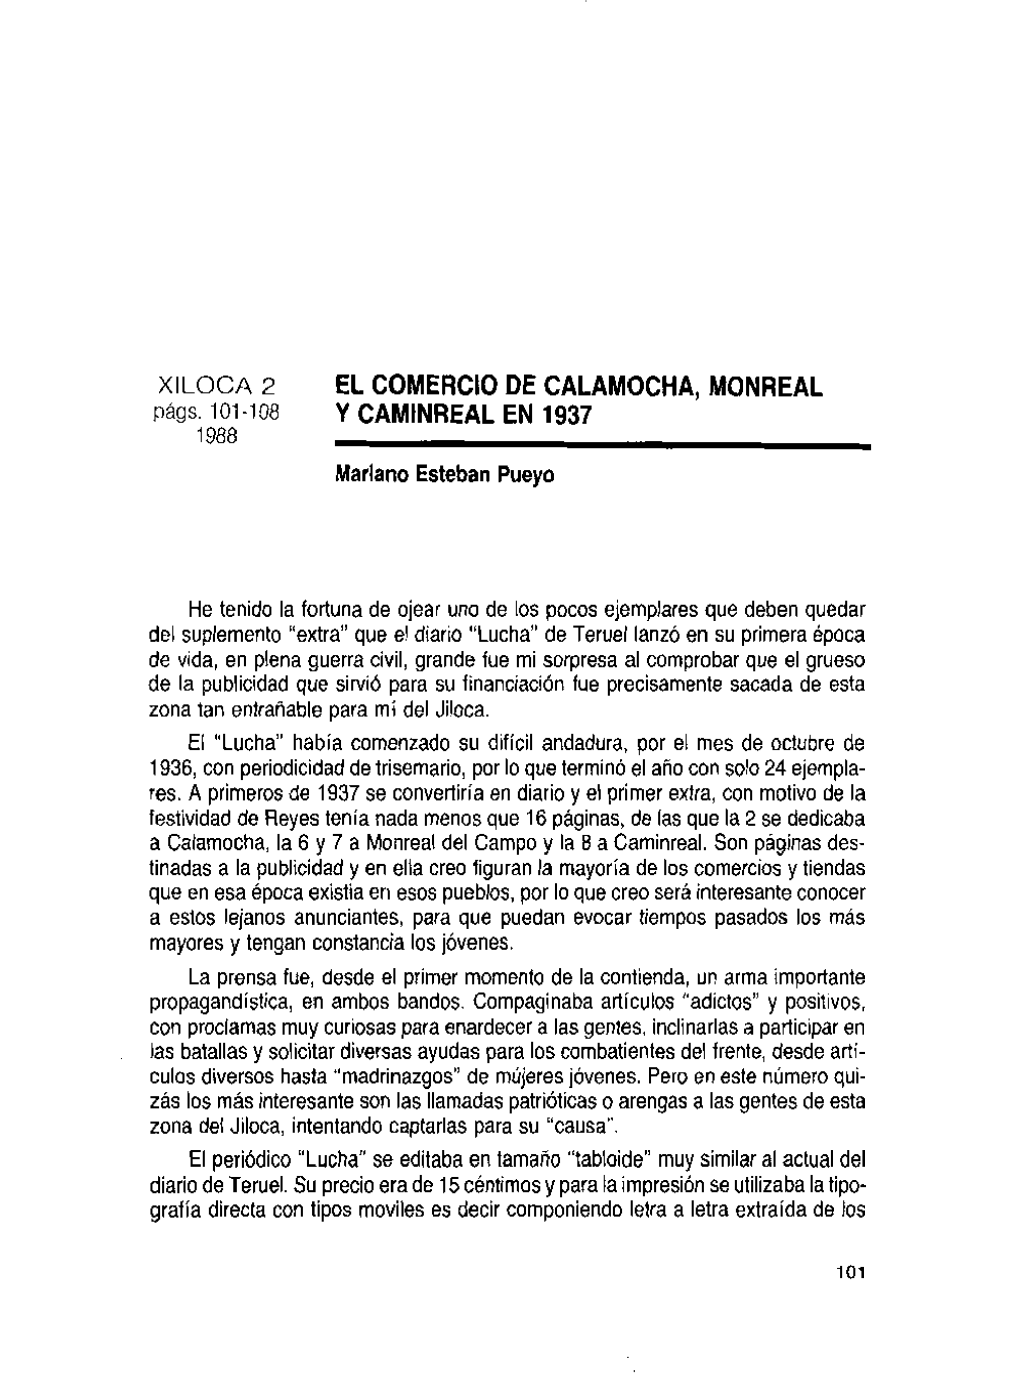 EL COMERCIO DE CALAMOCHA, MONREAL Ycamtnrealen1937